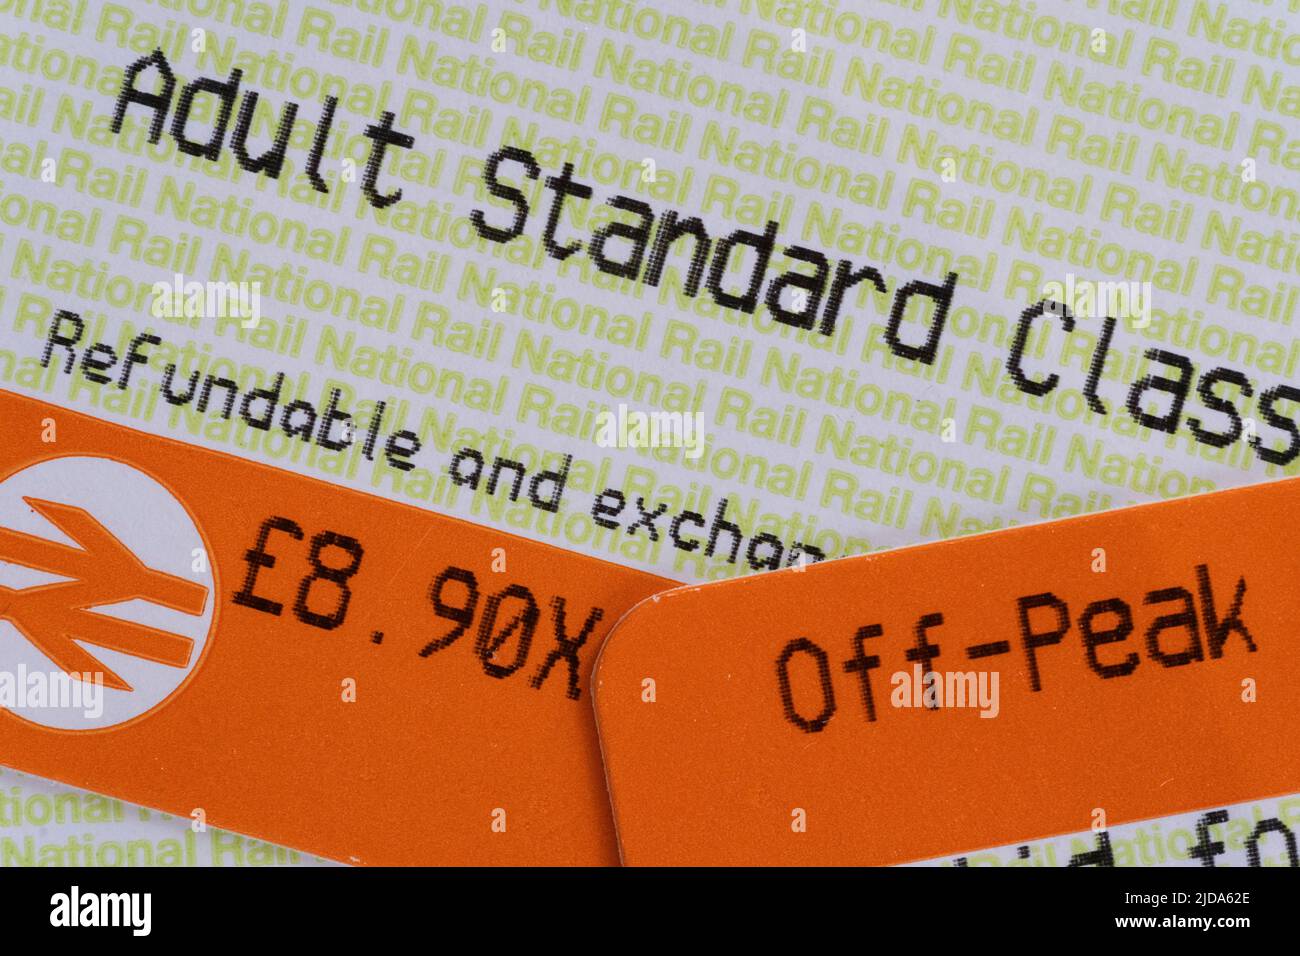 Primo piano sui biglietti ferroviari per adulti di classe standard nel Regno Unito. Tema - aumenti della tariffa ferroviaria, biglietterie ferroviarie, biglietti ferroviari inglesi, aumenti dei prezzi di viaggio Foto Stock